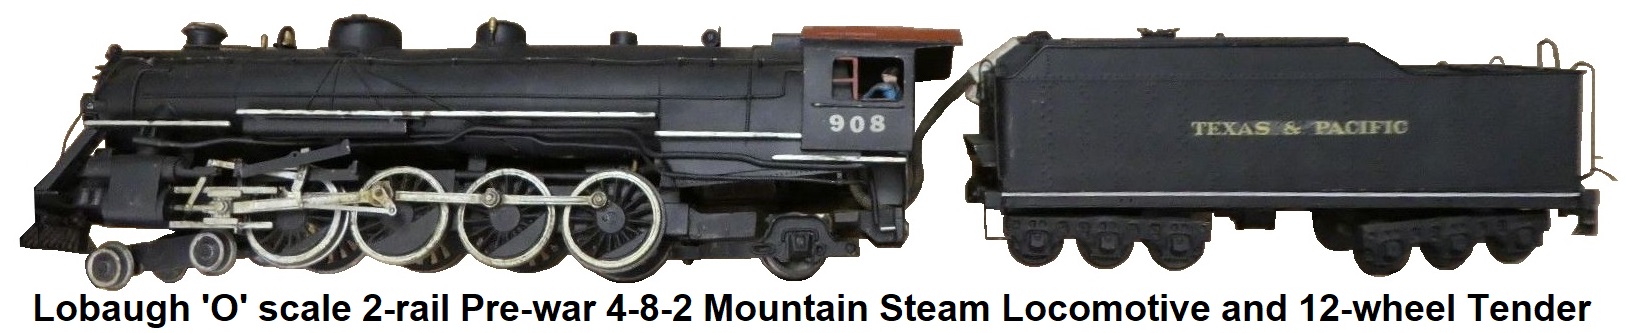 Lobaugh 'O' scale 2-rail pre-war 4-8-2 Mountain Steam loco and 12-wheel tender